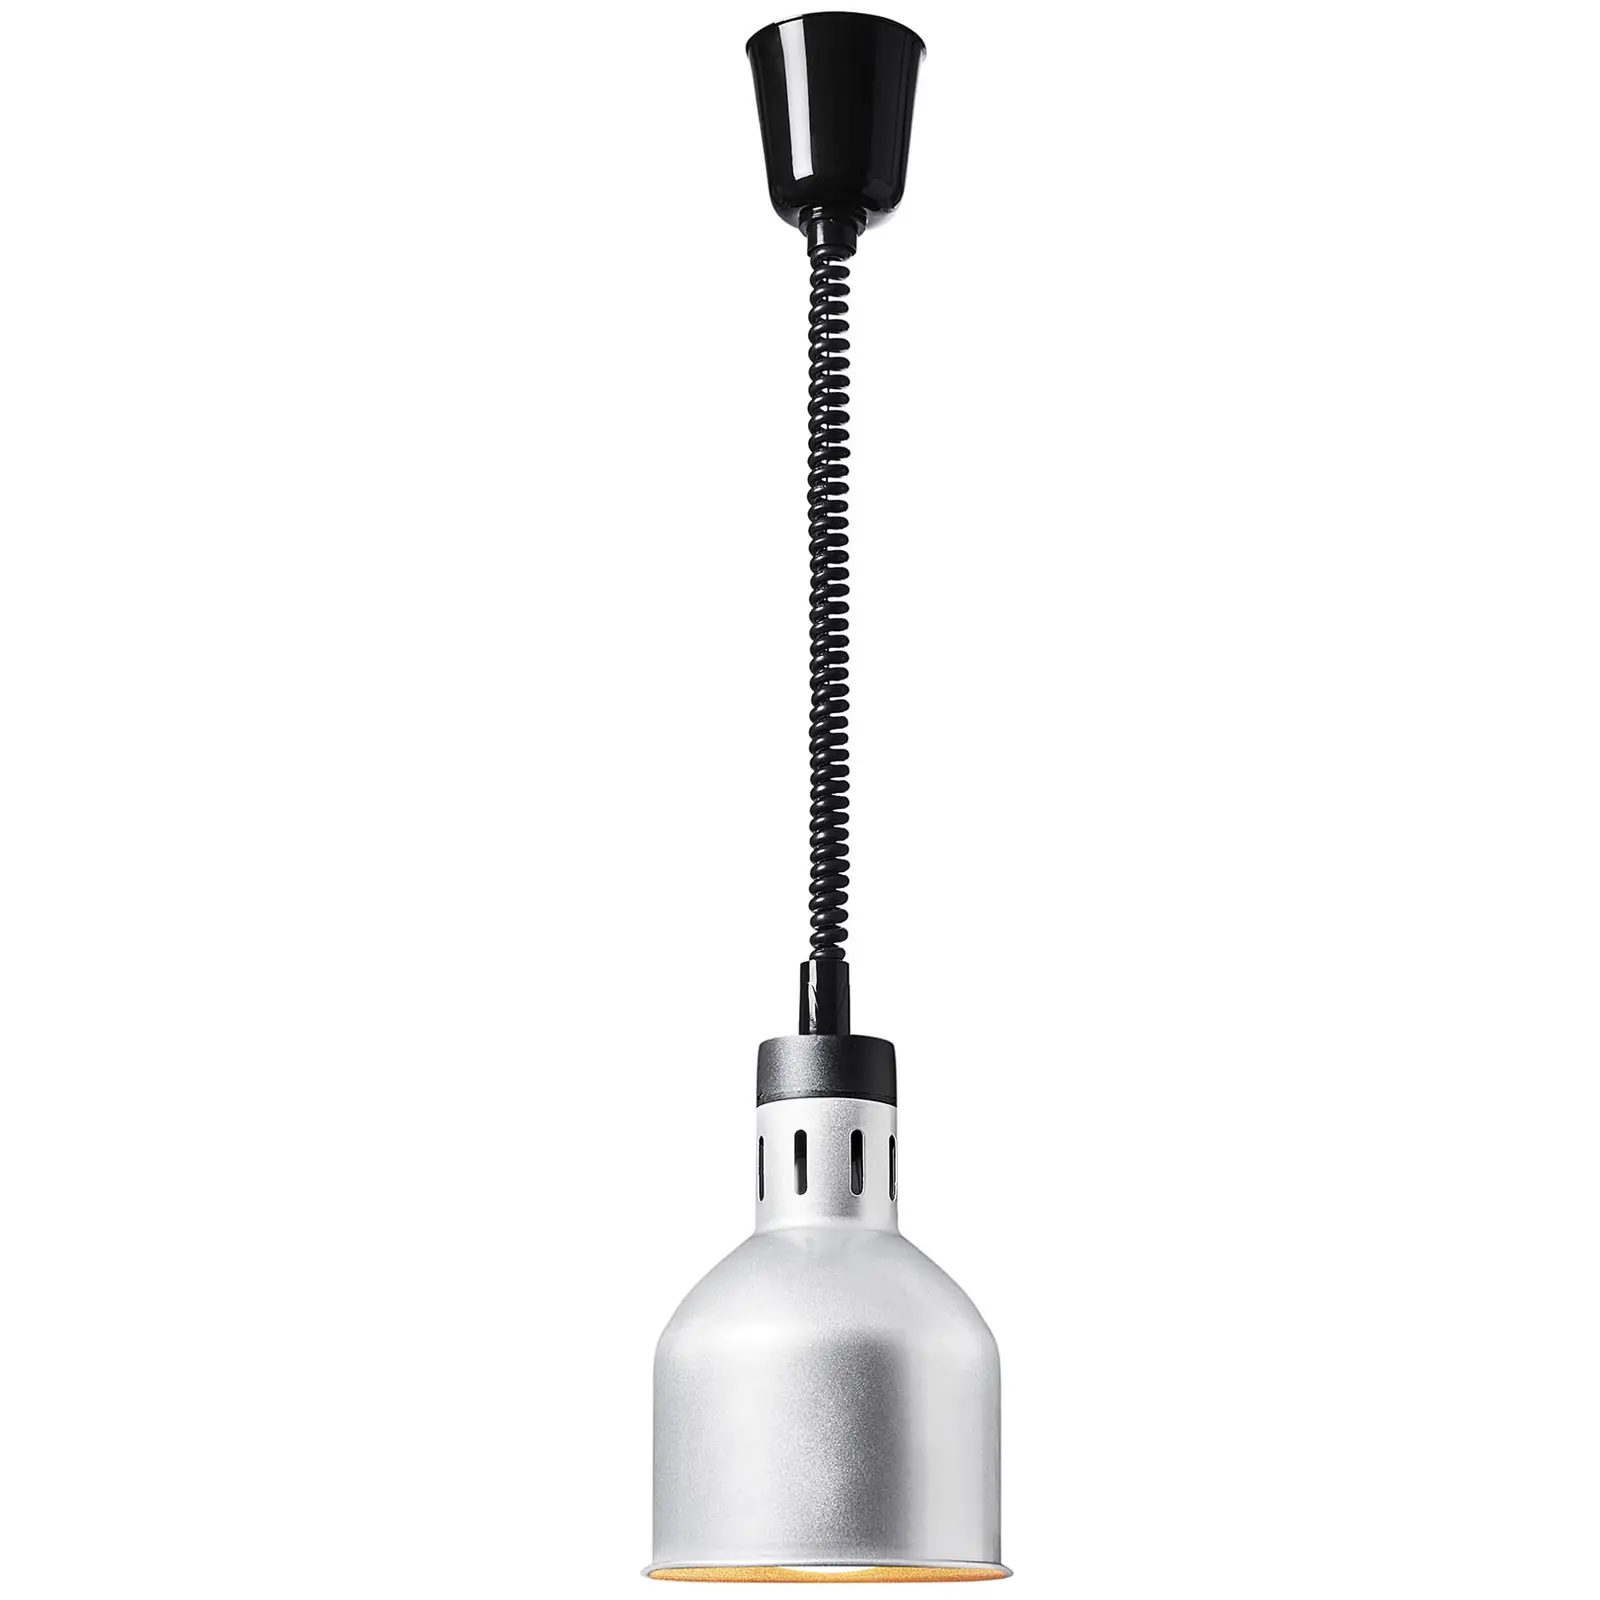 Seconda Mano Lampada riscaldante - argento - 17.5 x 17.5 x 29 cm  - acciaio - regolabile in altezza